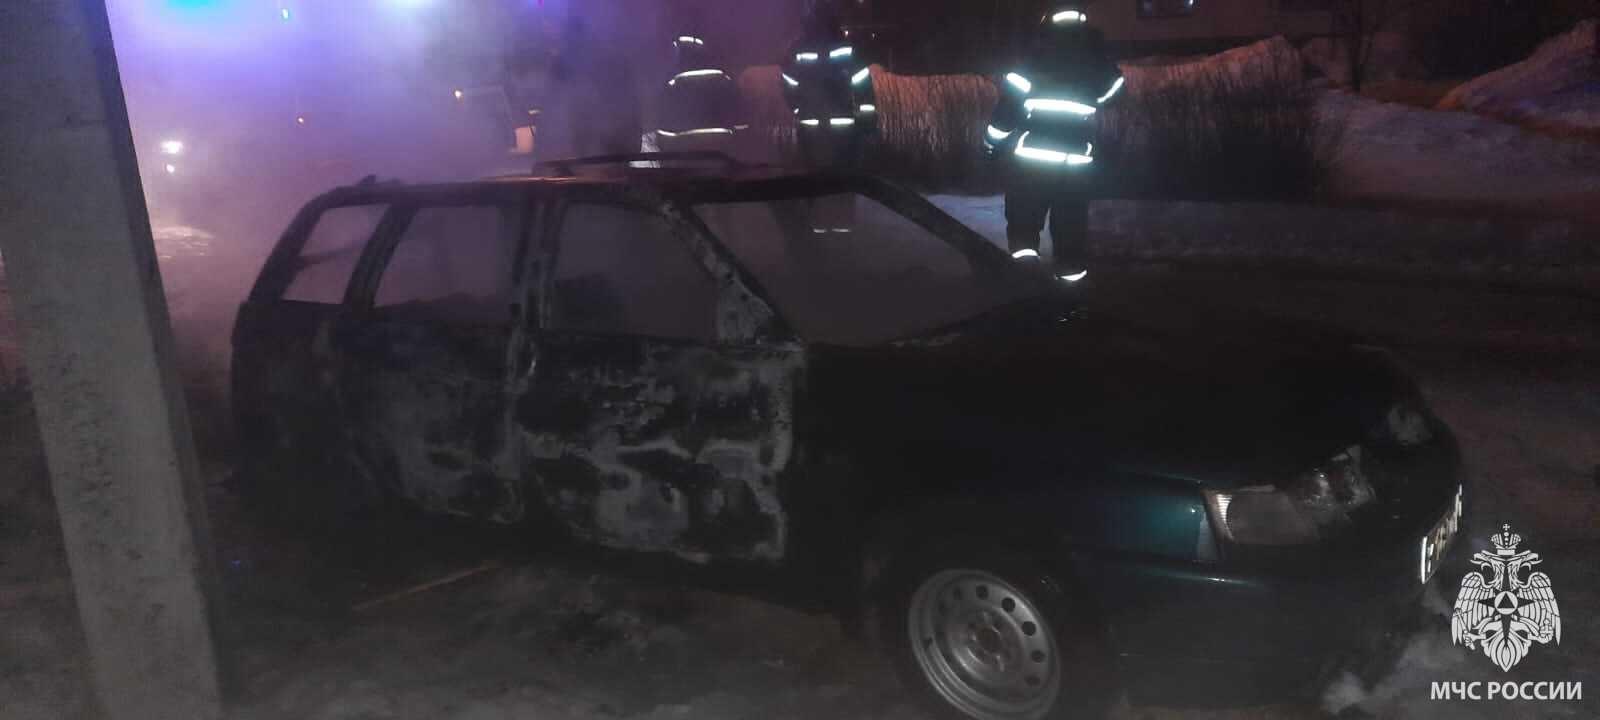 В Мценске сгорел отечественный автомобиль